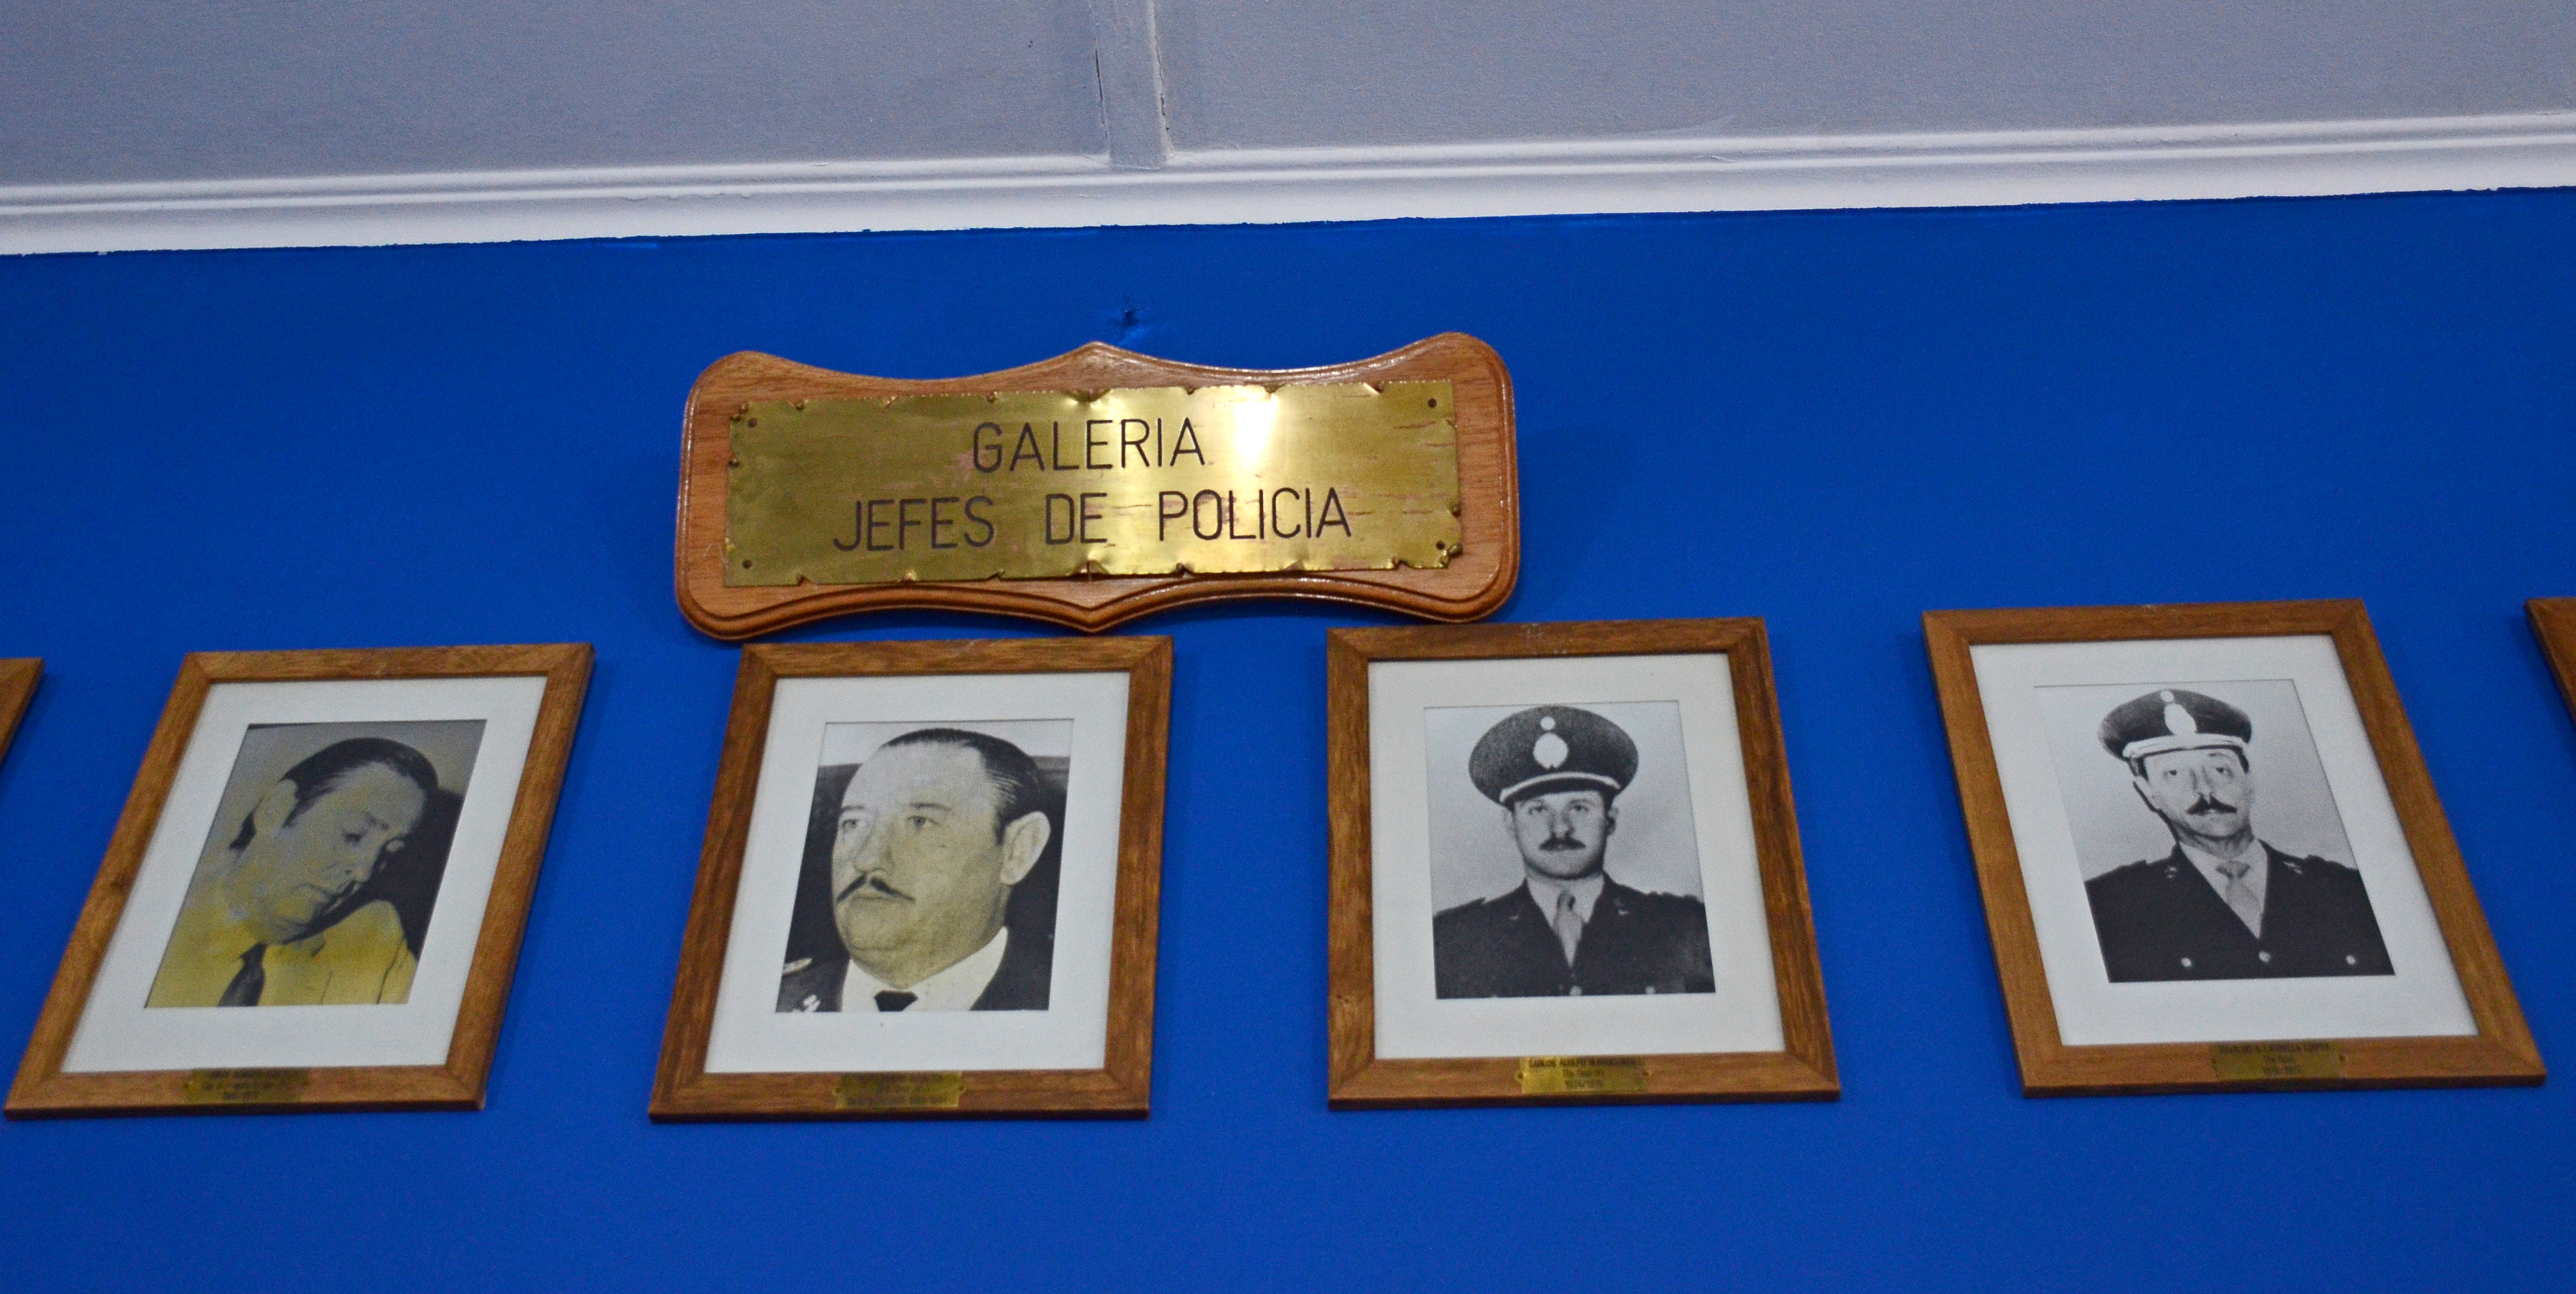 Es el último de la derecha. Fue interventor de la policía durante la última dictadura cívico-militar. Foto Mauro Pérez.